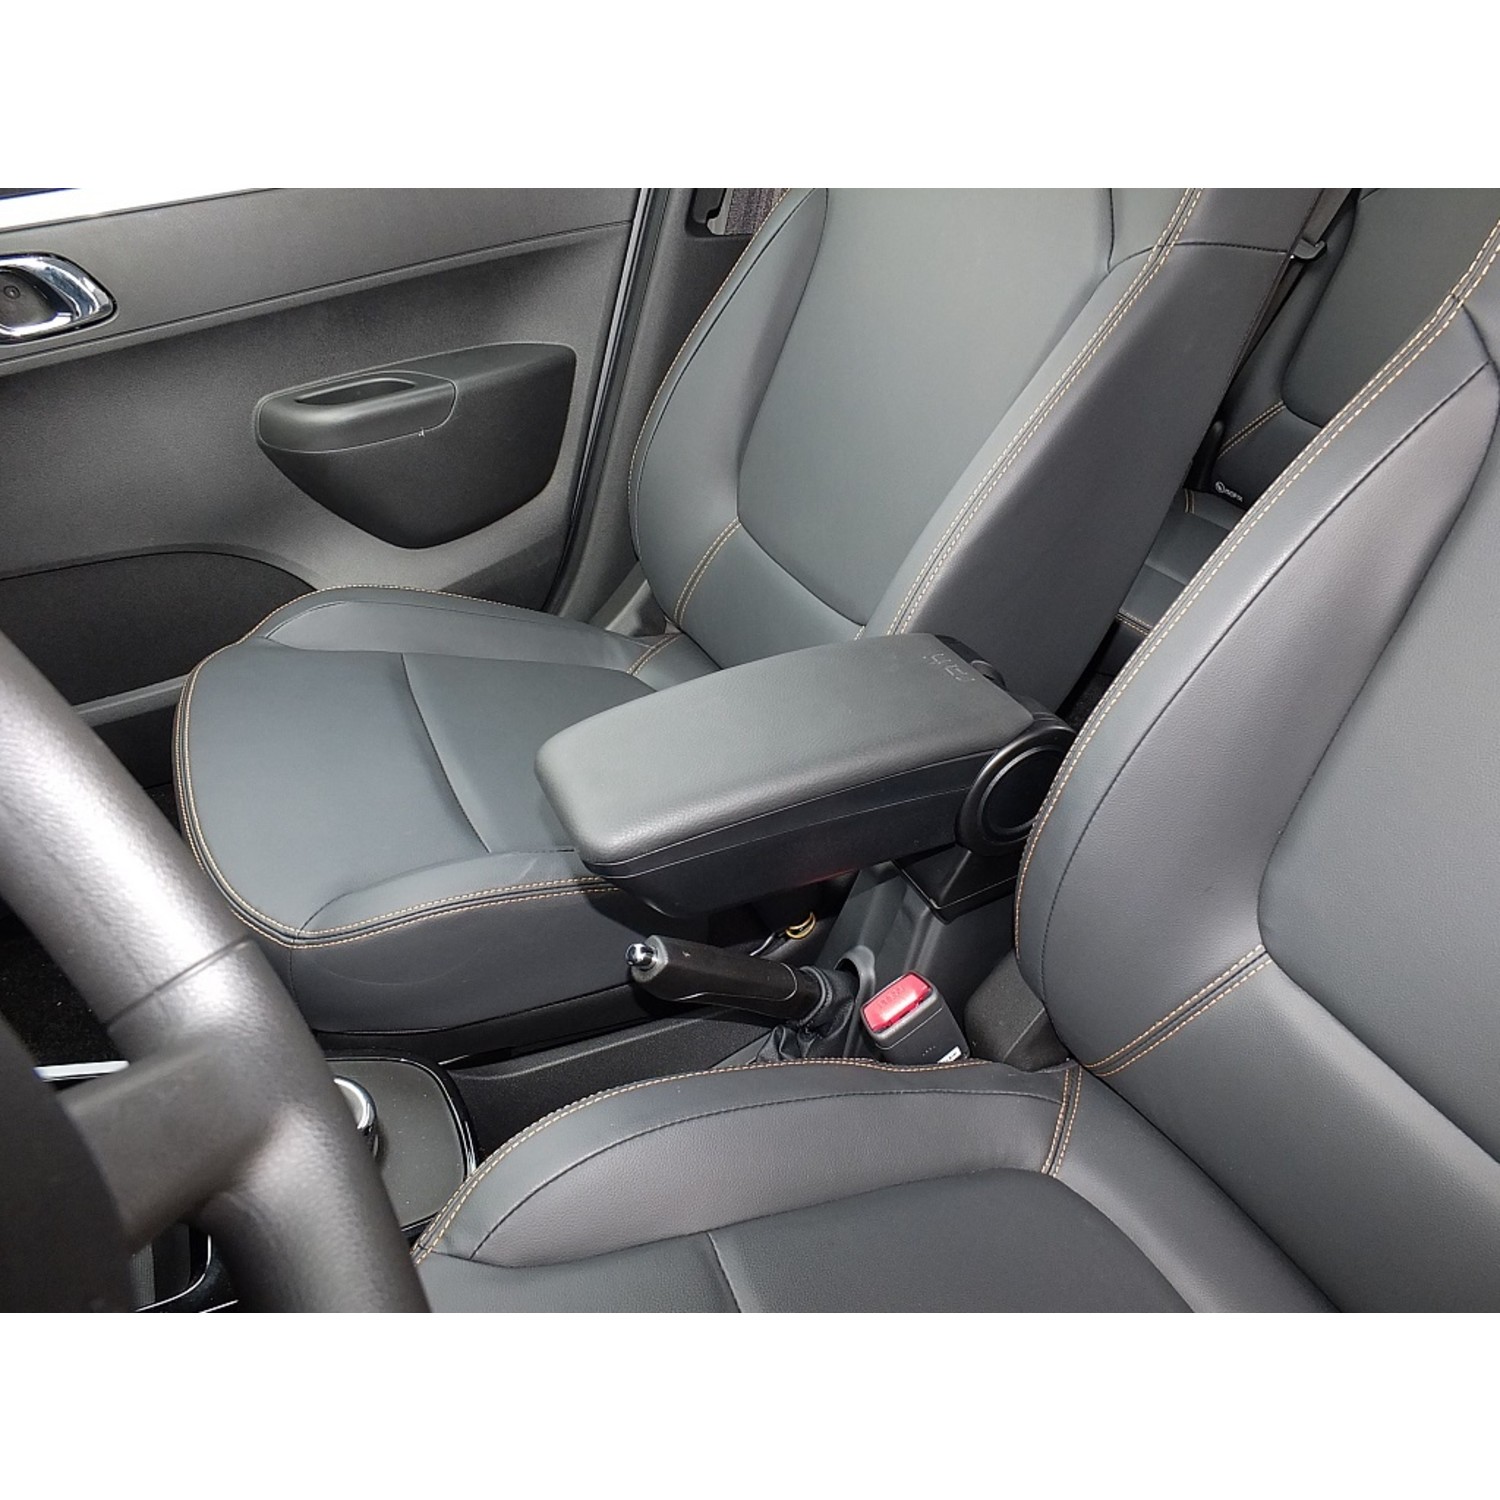 Maßgefertigter Sitzbezug Exclusive für Ford Focus - Maluch Premium